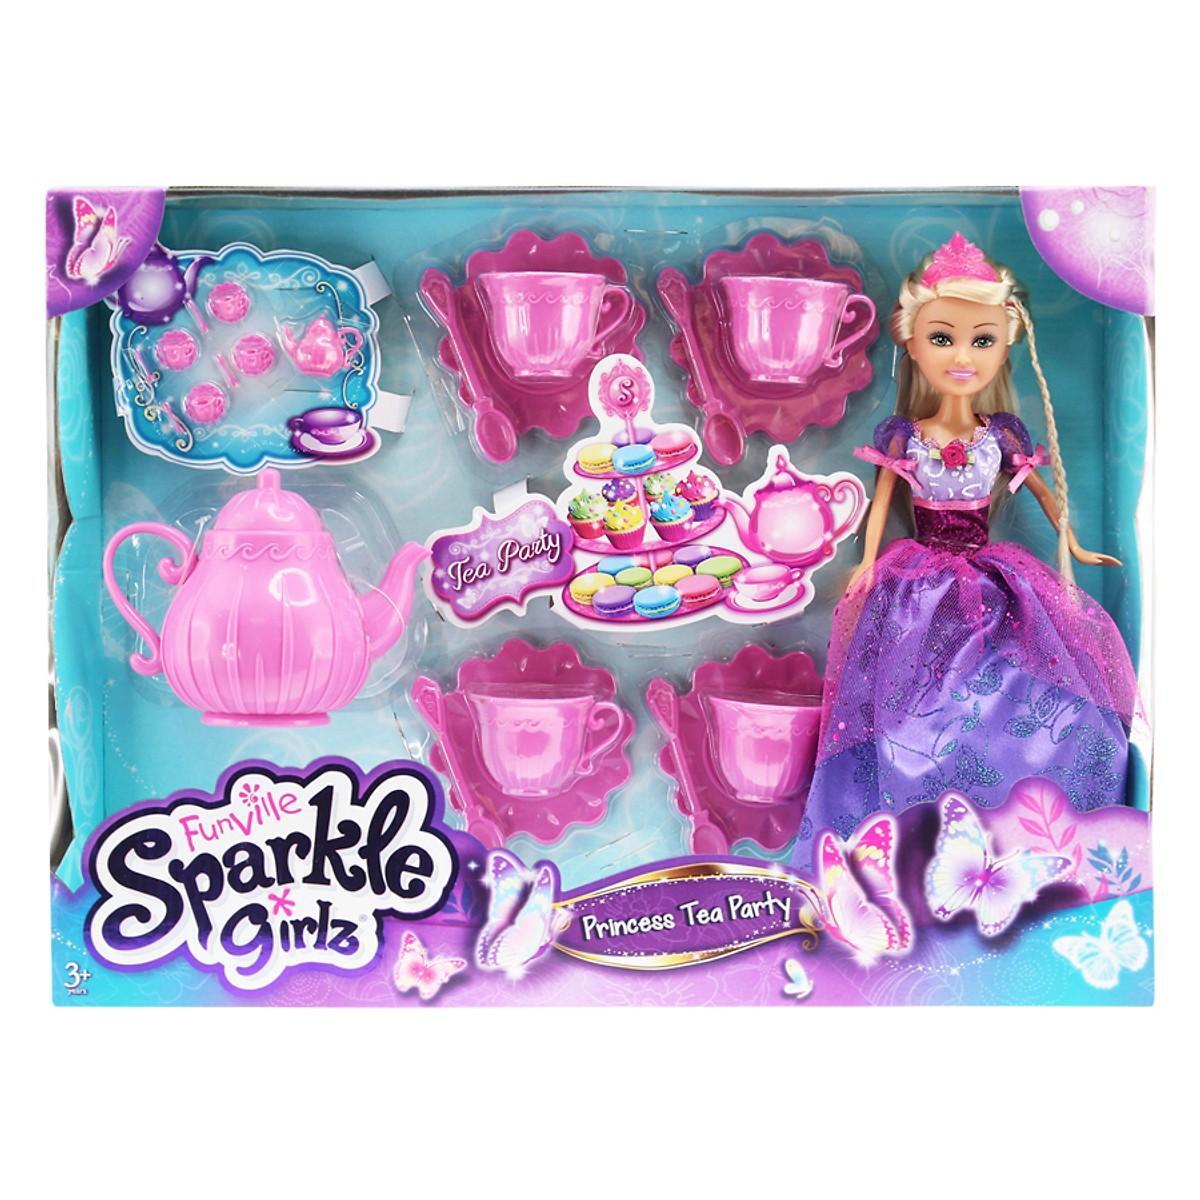 Đồ chơi búp bê Sparkle - Tiệc trà của công chúa Sp24103